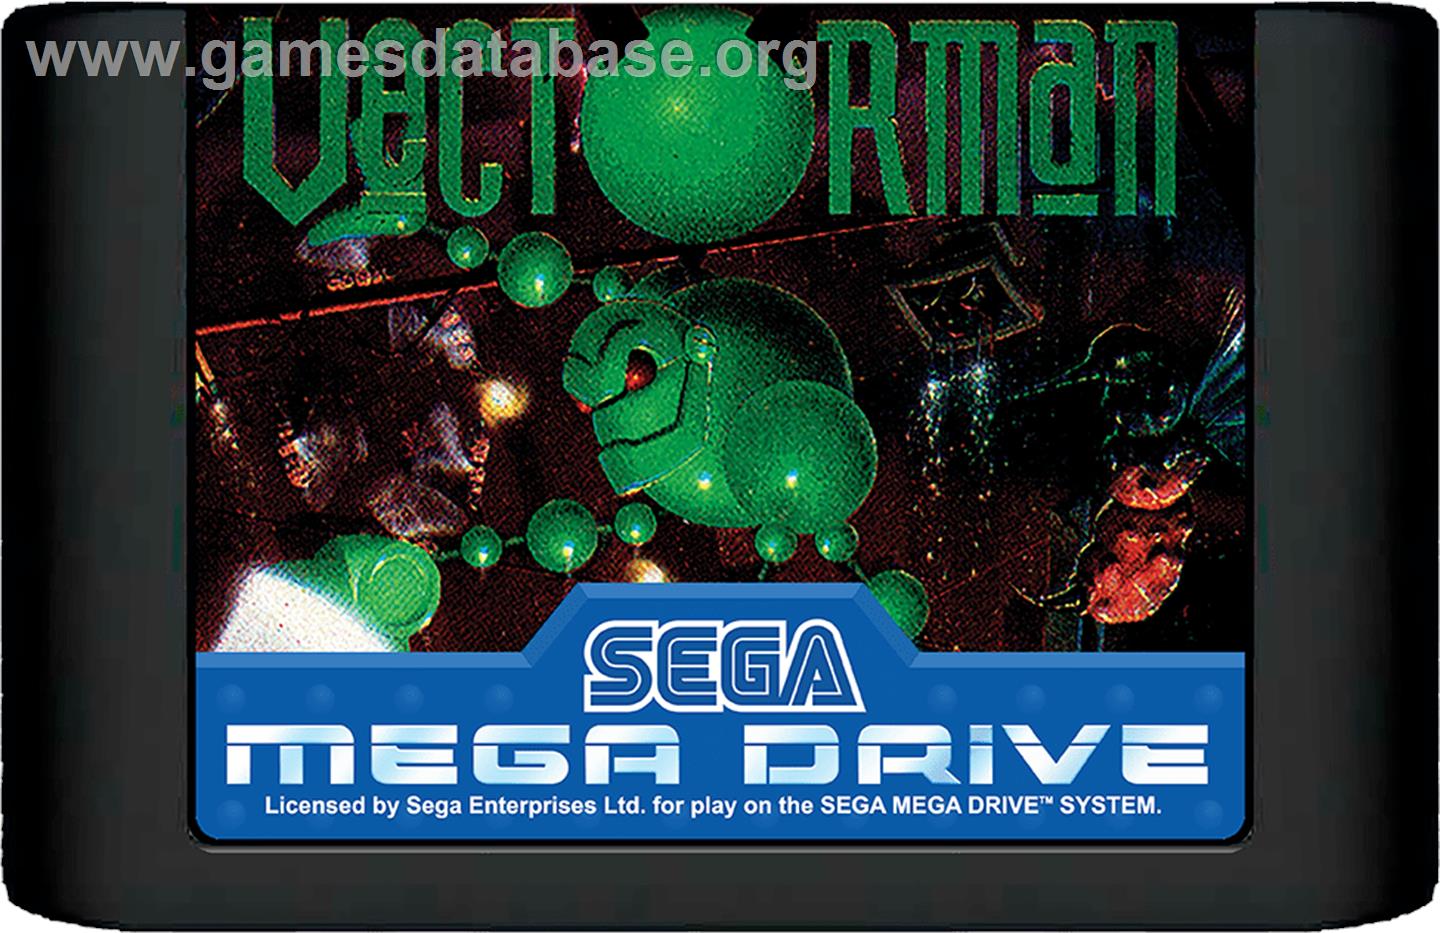 Vectorman - Sega Genesis - Artwork - Cartridge